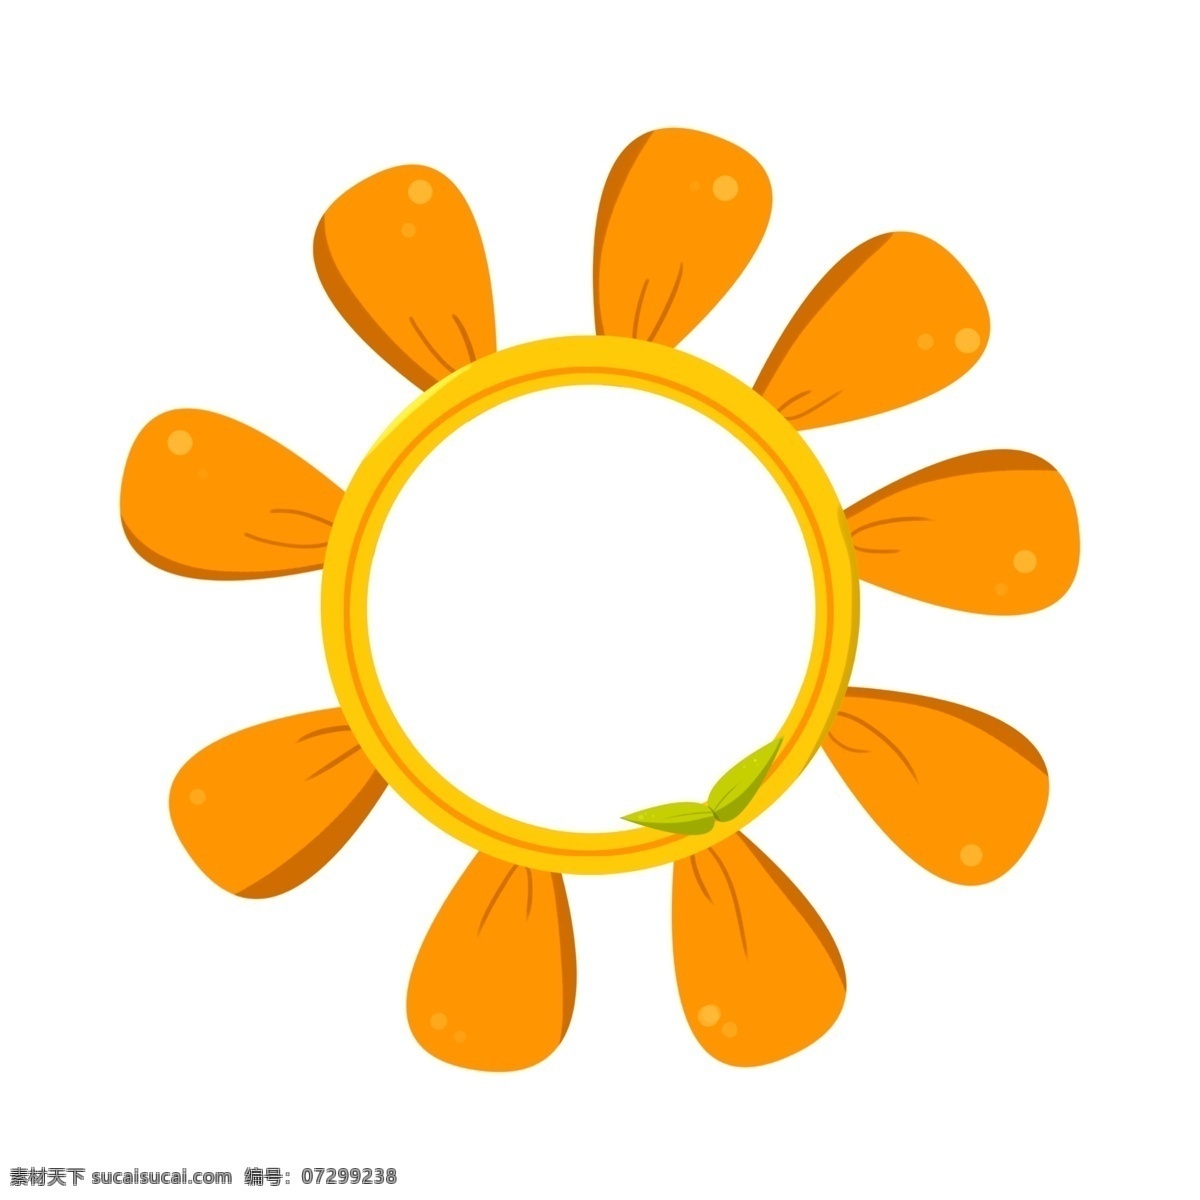 太阳花 可爱 边框 黄色的花朵 漂亮的花朵 美丽的边框 卡通边框 手绘可爱边框 圆形的边框